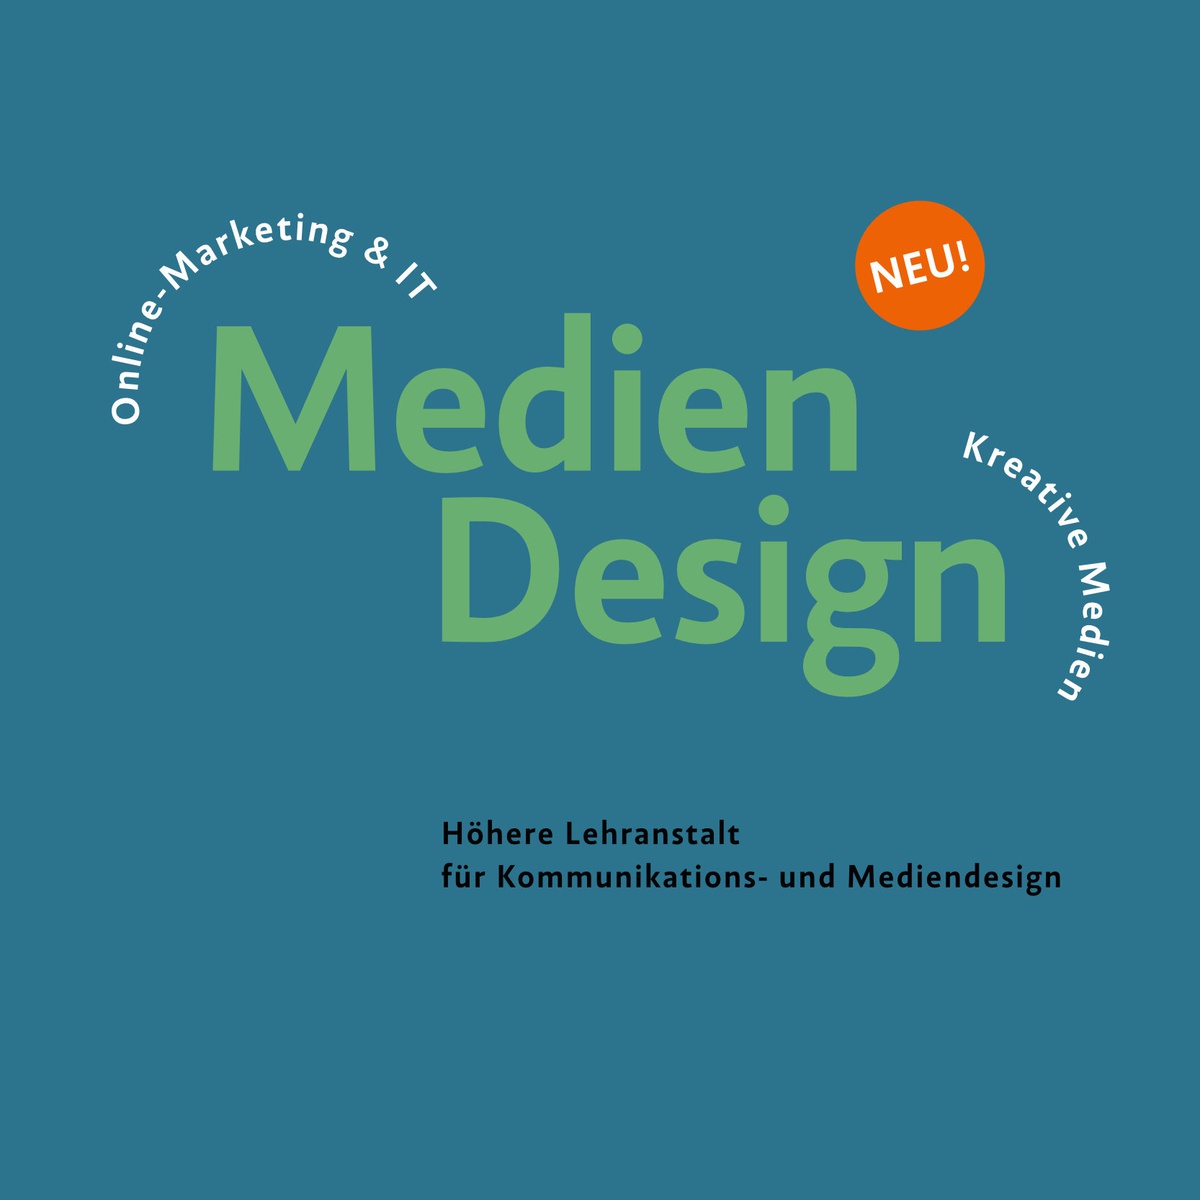 Mediendesign